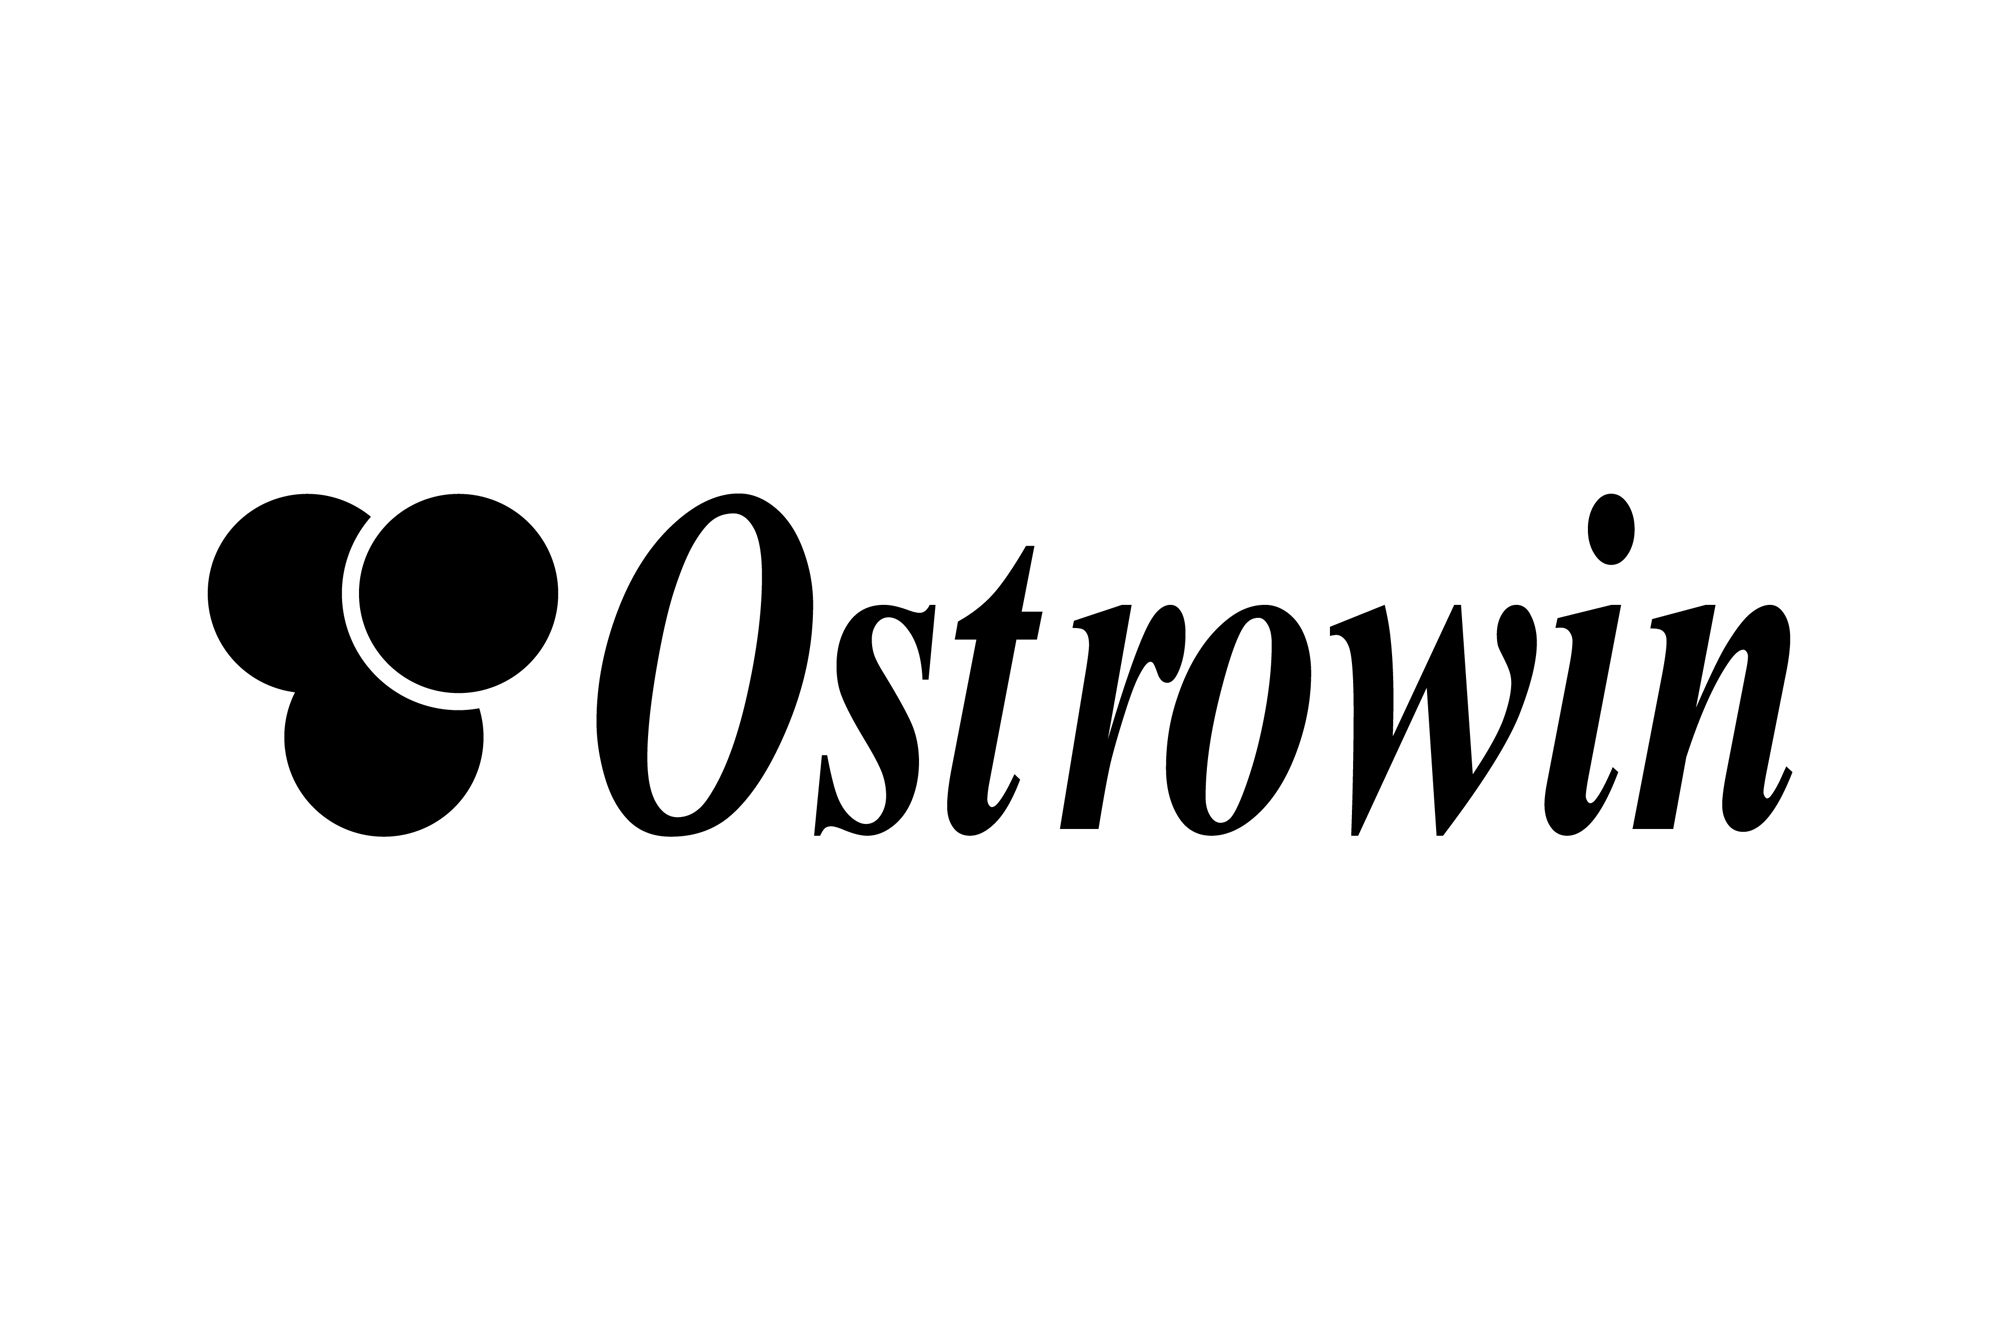 Ostrowin - logo PLANSZA 30x30cm EDYCJA